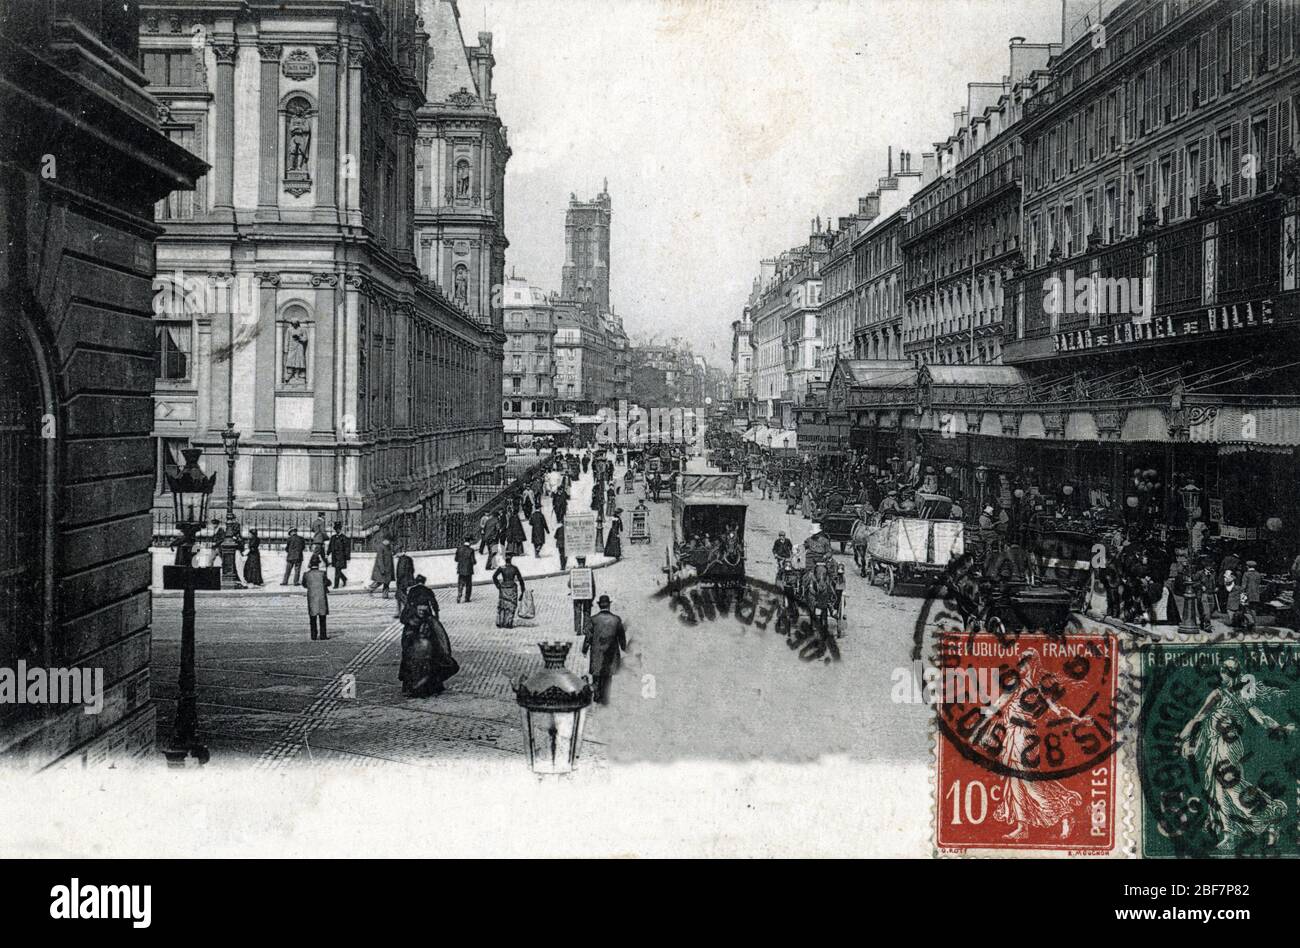 Vue de la rue de Rivoli, au niveau de l'Hotel de Ville, sur la droite le Bazar de l'Hotel de ville (BHV) 1910 - 1918 Paris Postcard Private collection Stock Photo